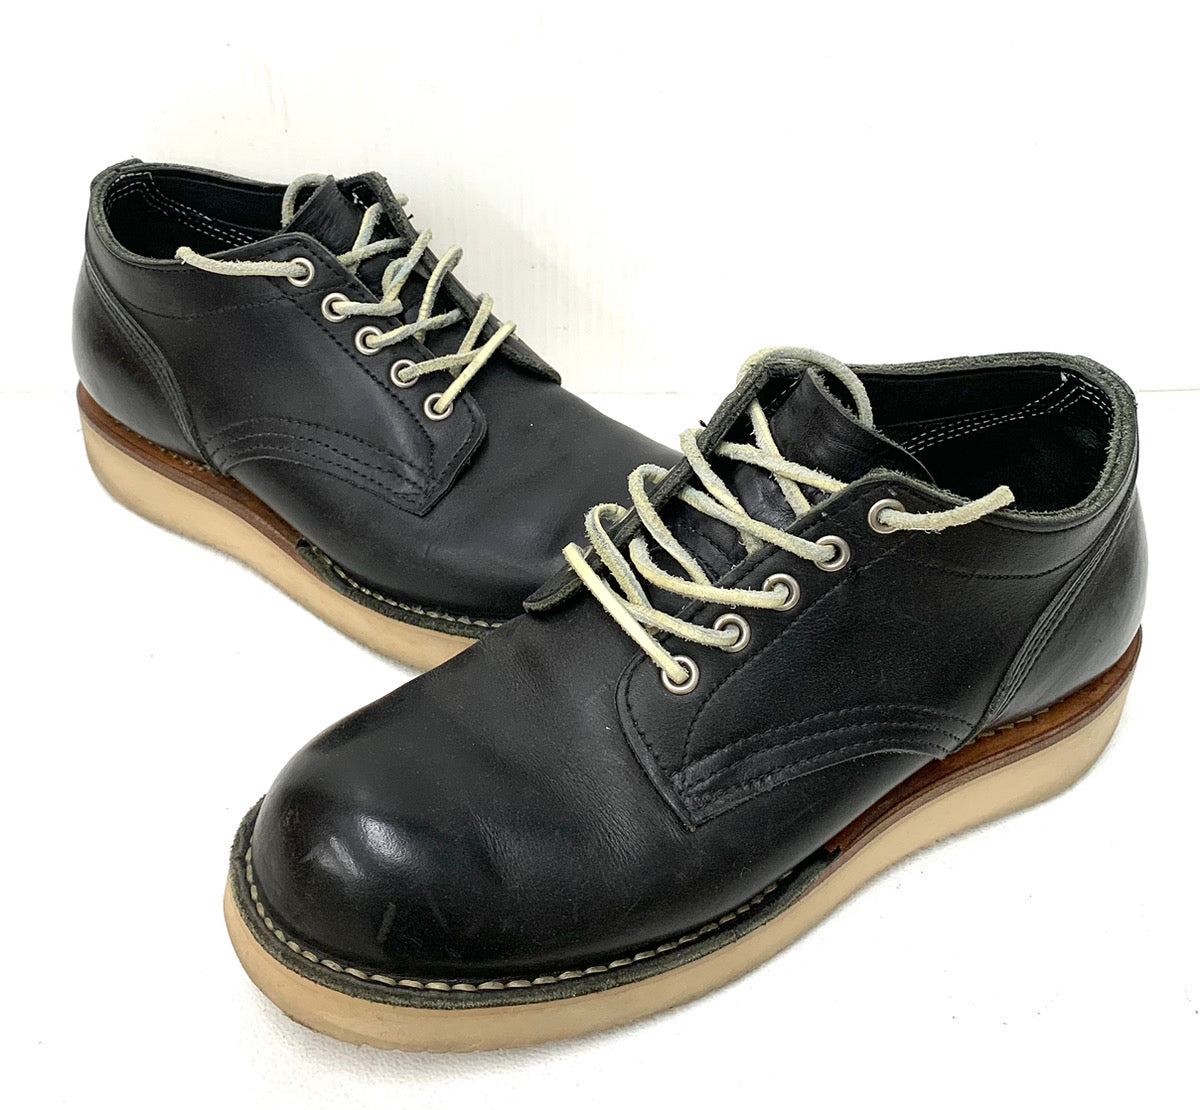 ハソーンブーツ HATHORN BOOTS オックスフォード ライナ OX FORD RAINIER vibram メンズ靴 ブーツ ワーク ロゴ  ブラック 201-shoes618